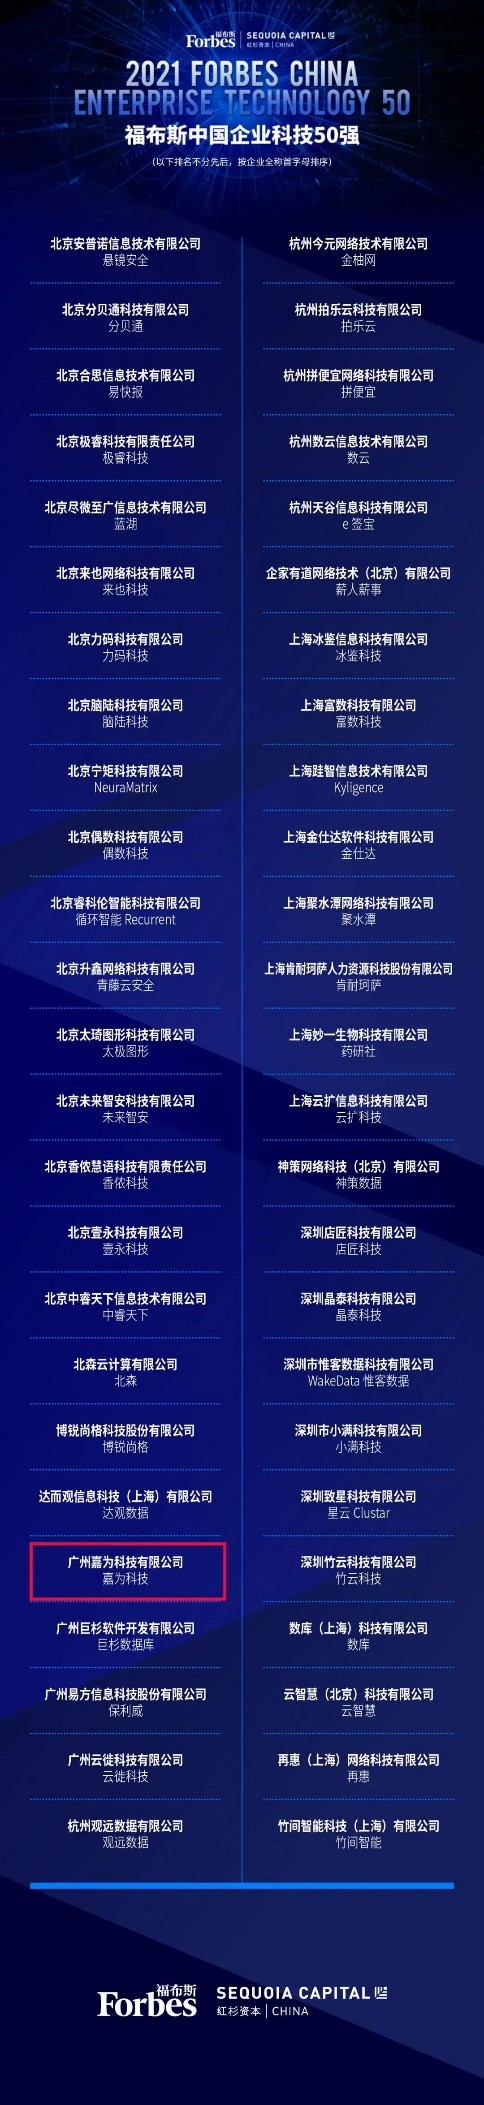 嘉为科技登榜 “2021年福布斯中国企业科技50强”